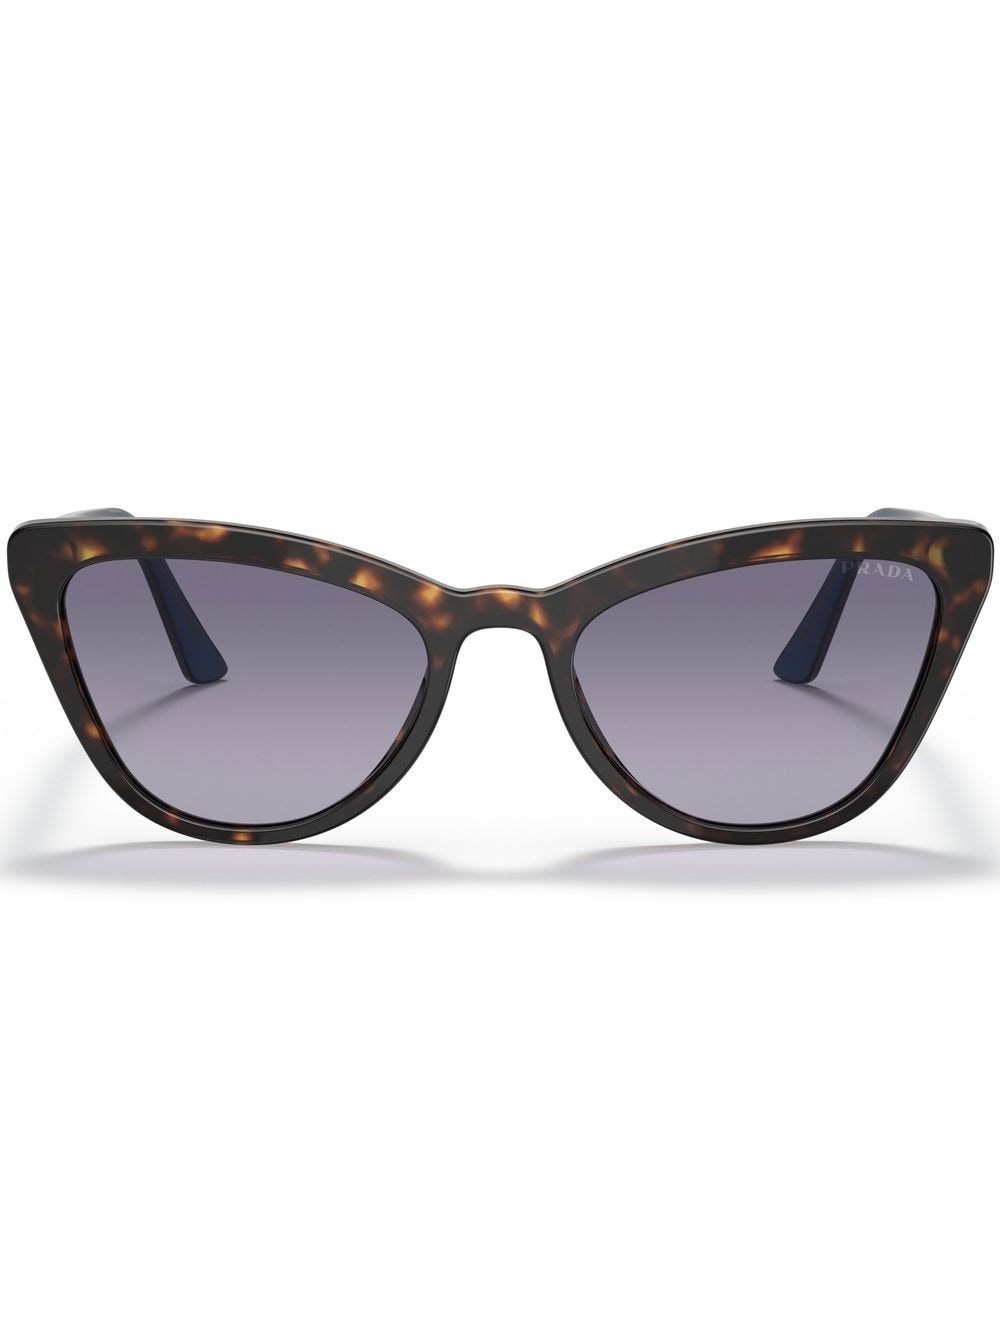 Prada Catwalk Tortoiseshell-effect Sunglasses In Brown